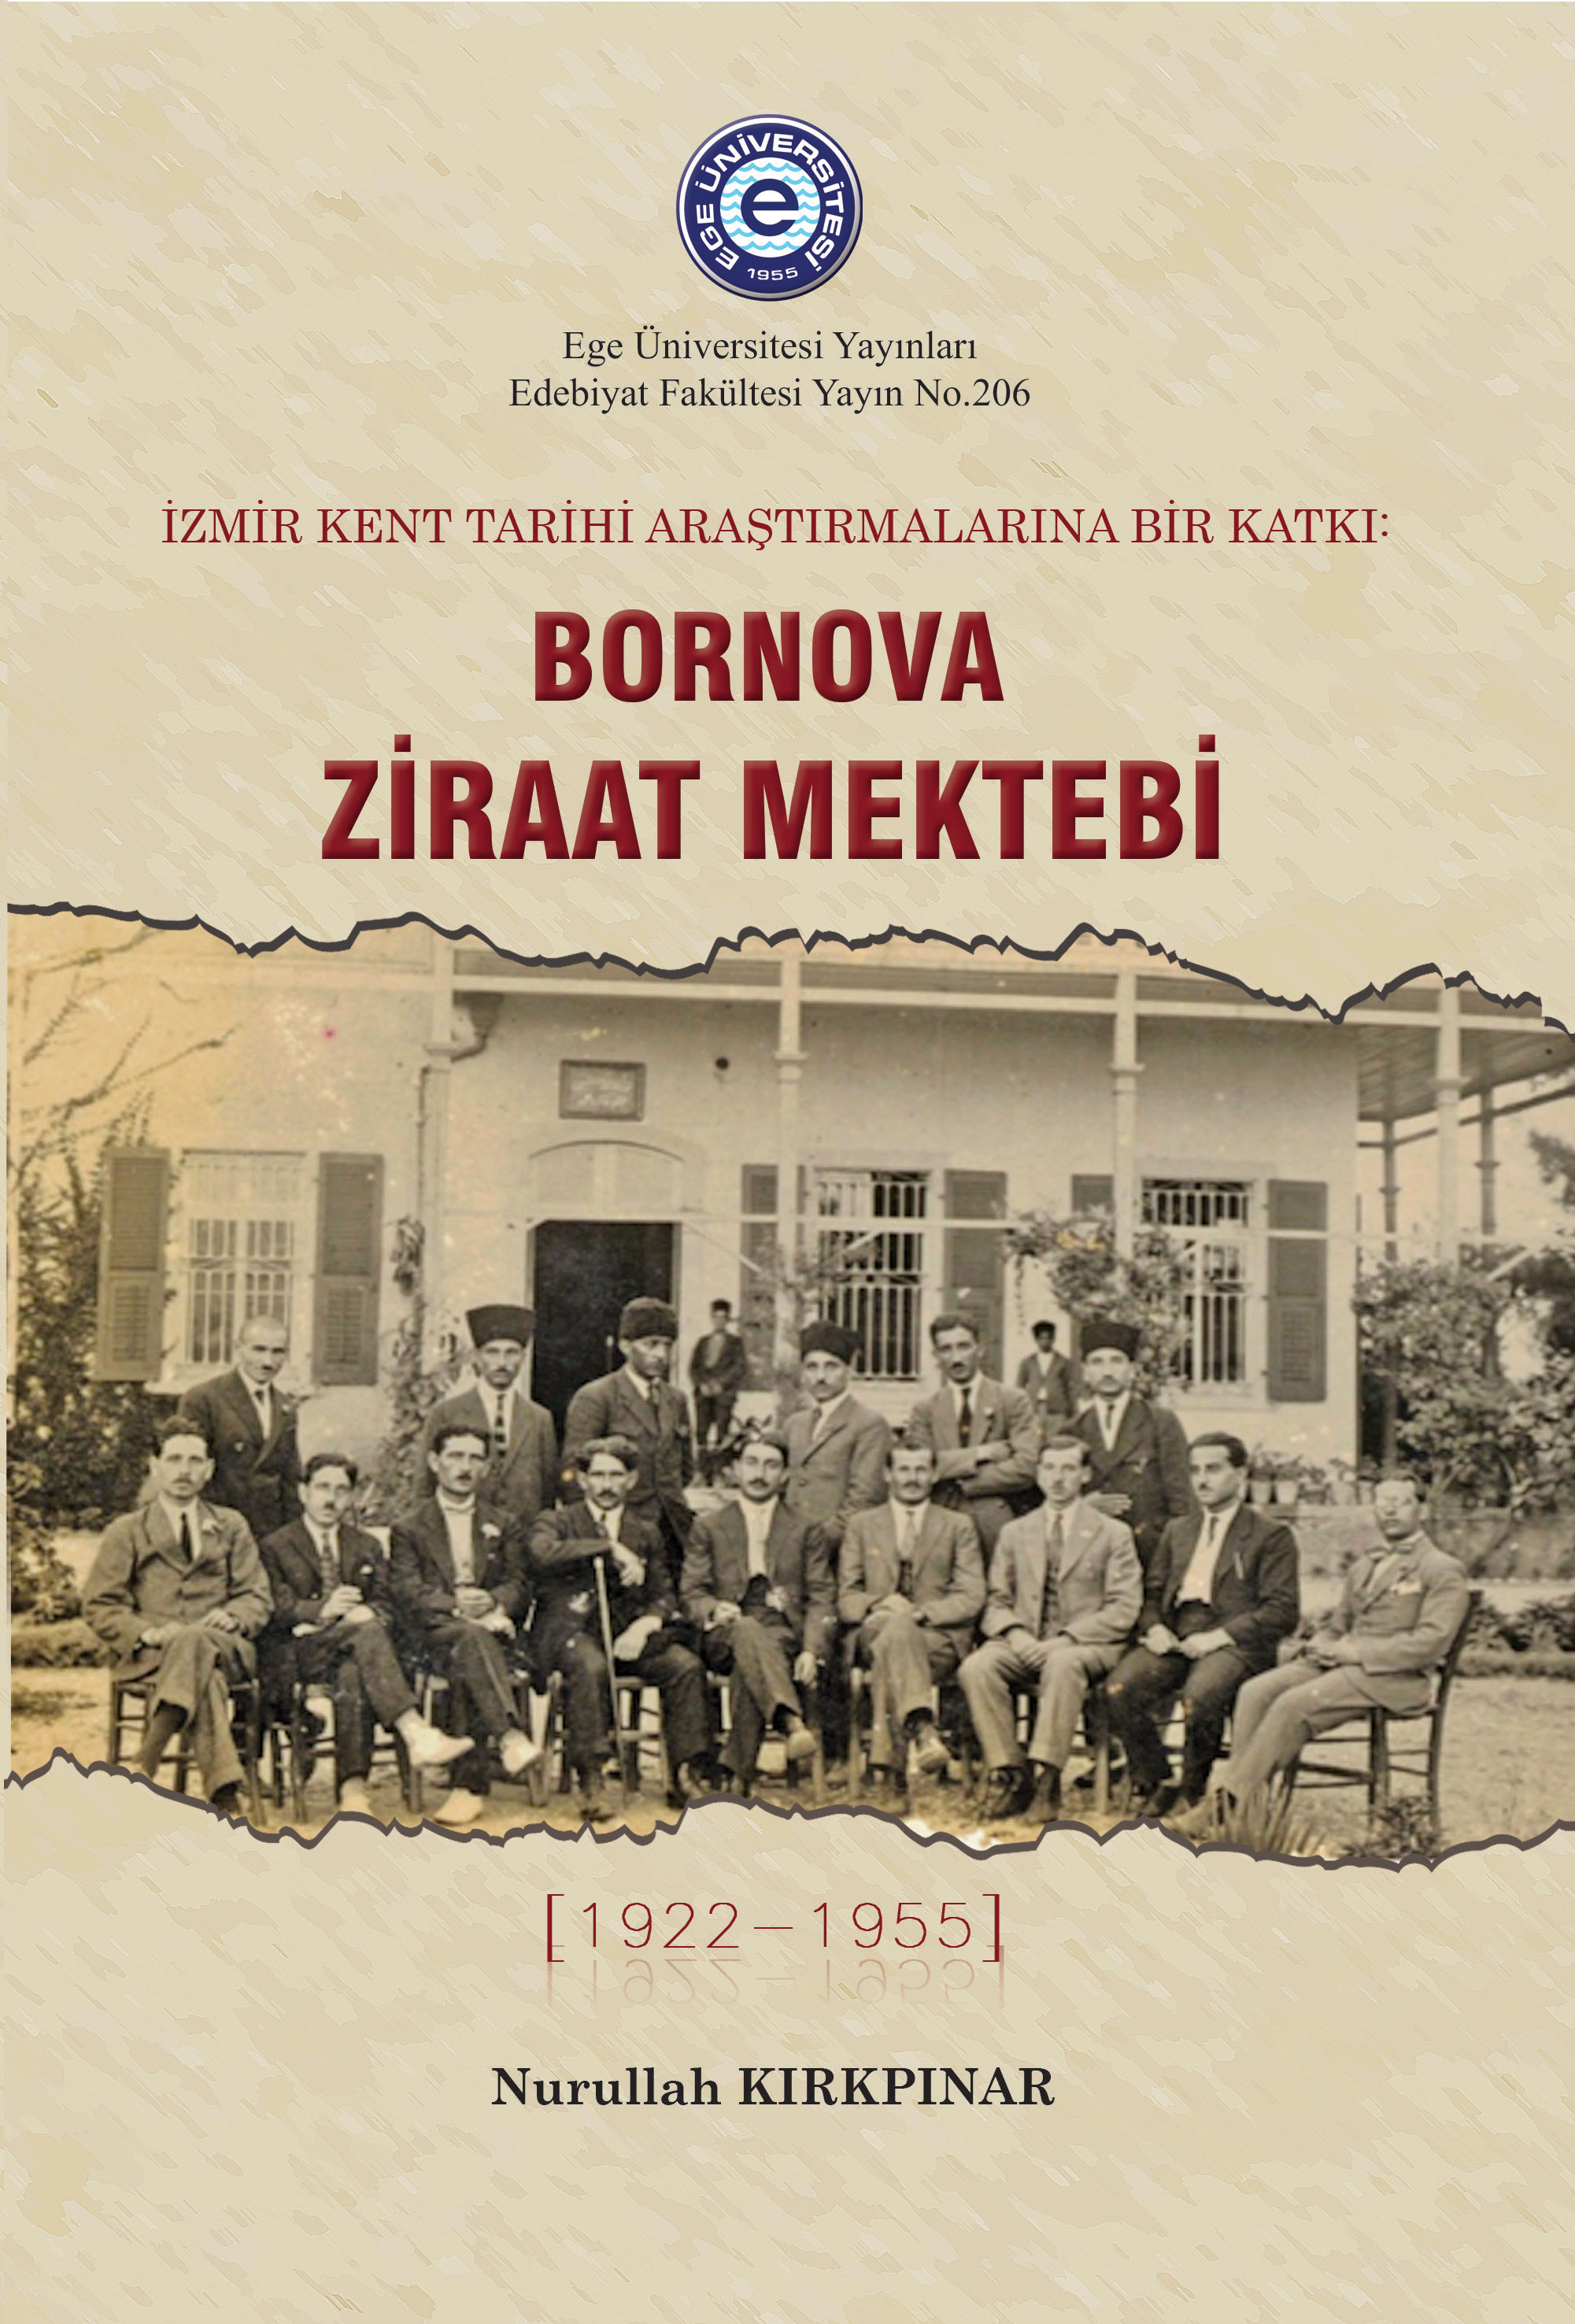 İzmir Kent Tarihi Araştırmalarına Bir Katkı: Bornova Ziraat Mektebi (1922-1955)